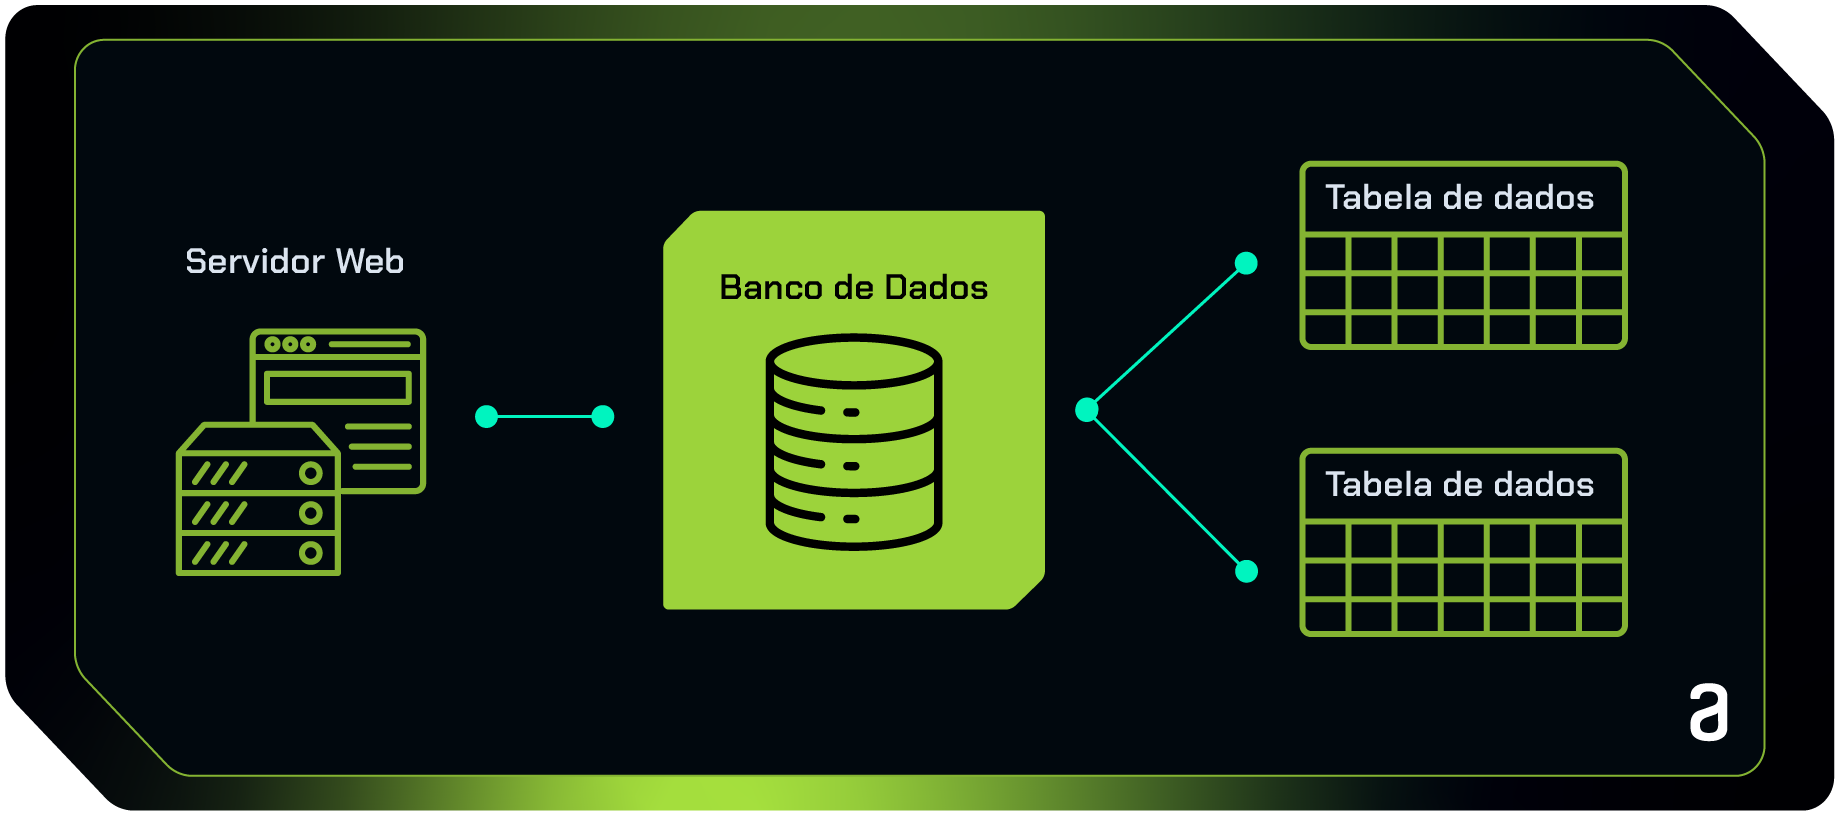 Na imagem, é possível ver uma representação gráfica do banco de dados que compreende servidor web e tabela de dados